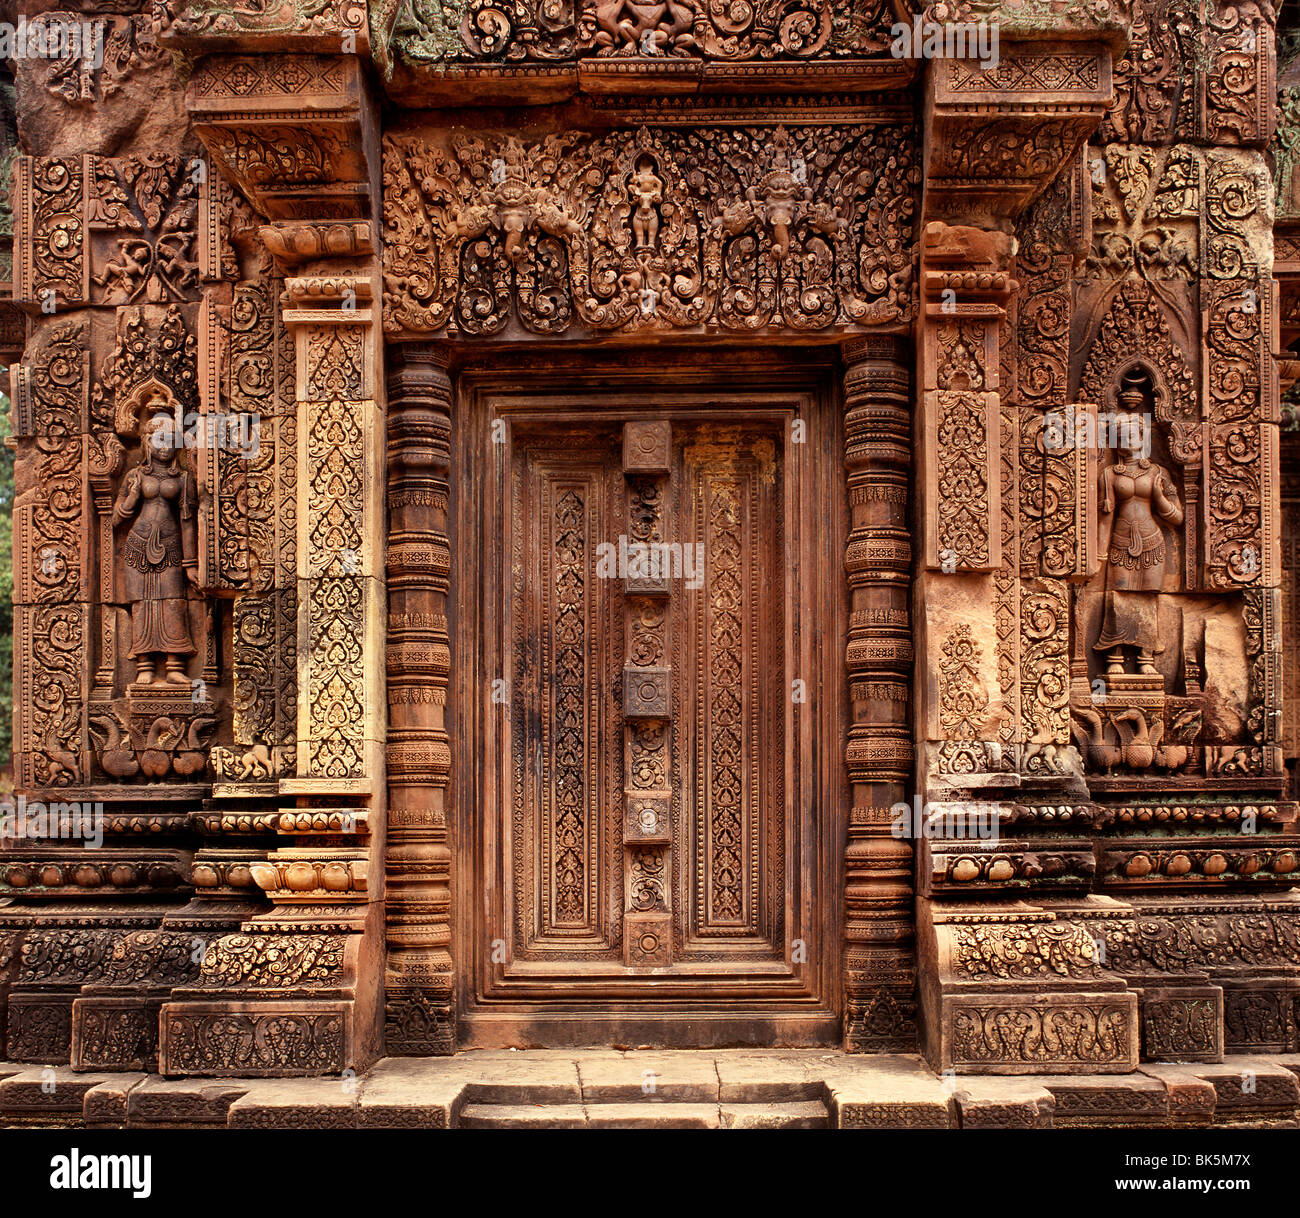 Banteay Srei, stammt aus der zweiten Hälfte des 10. Jahrhunderts, Angkor, UNESCO World Heritage Site, Kambodscha Stockfoto